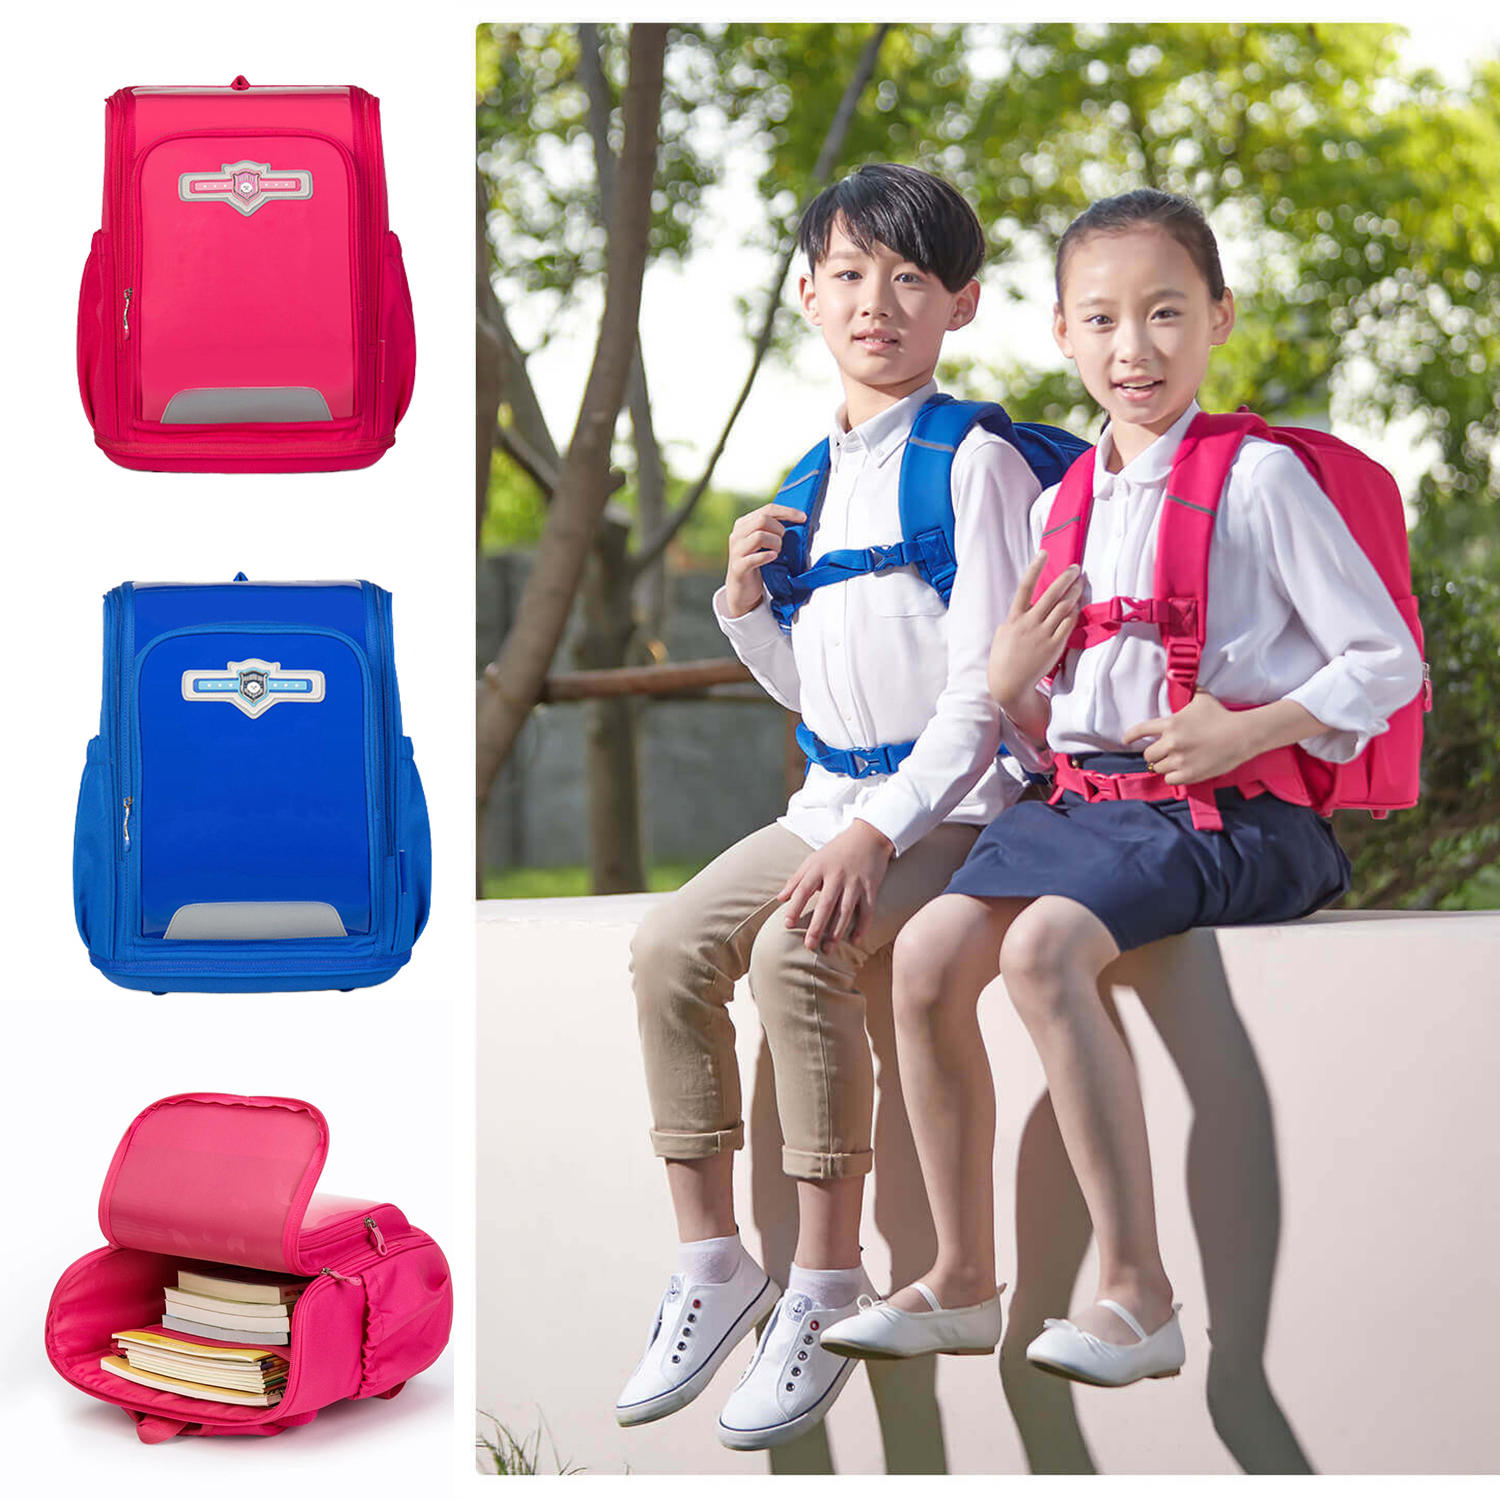 Zaino Xiaoyang per bambini e studenti, protegge la colonna vertebrale e riduce il carico, di colore rosso, per ragazzi e ragazze